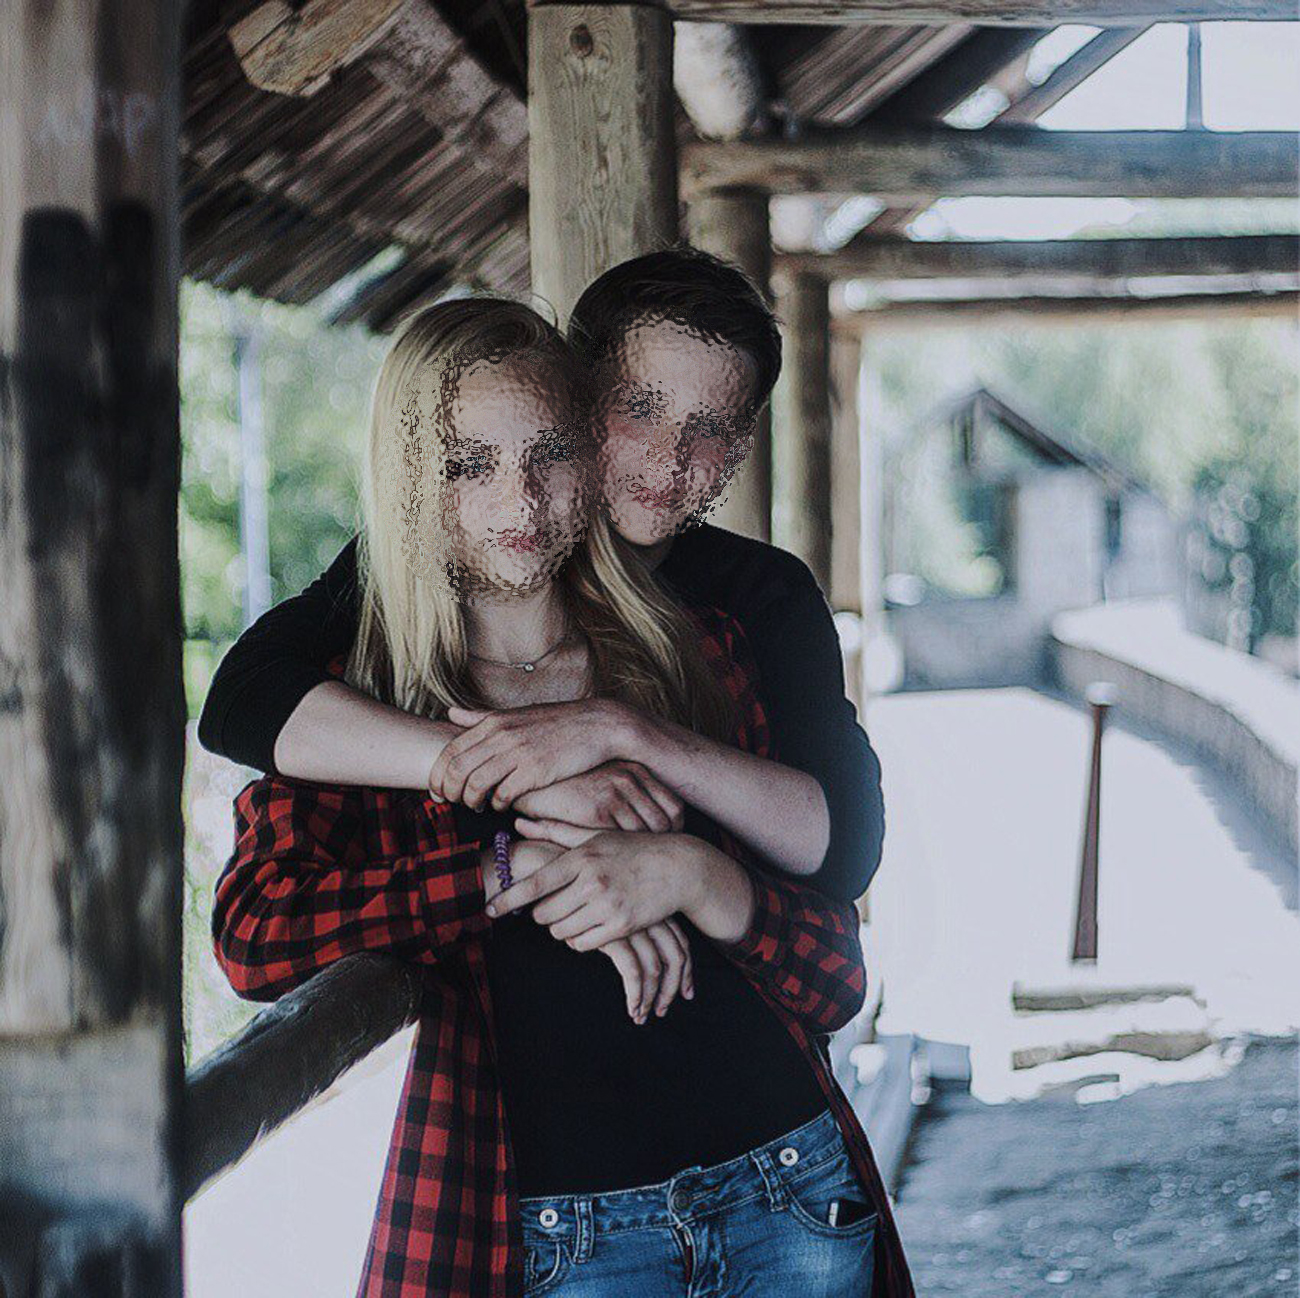 Laut Denis hätten sich die beiden zur Flucht entschieden, weil seine Freundin Katja von ihren Eltern „brutal“ verprügelt worden sei. Foto: denismyr18/vk.com